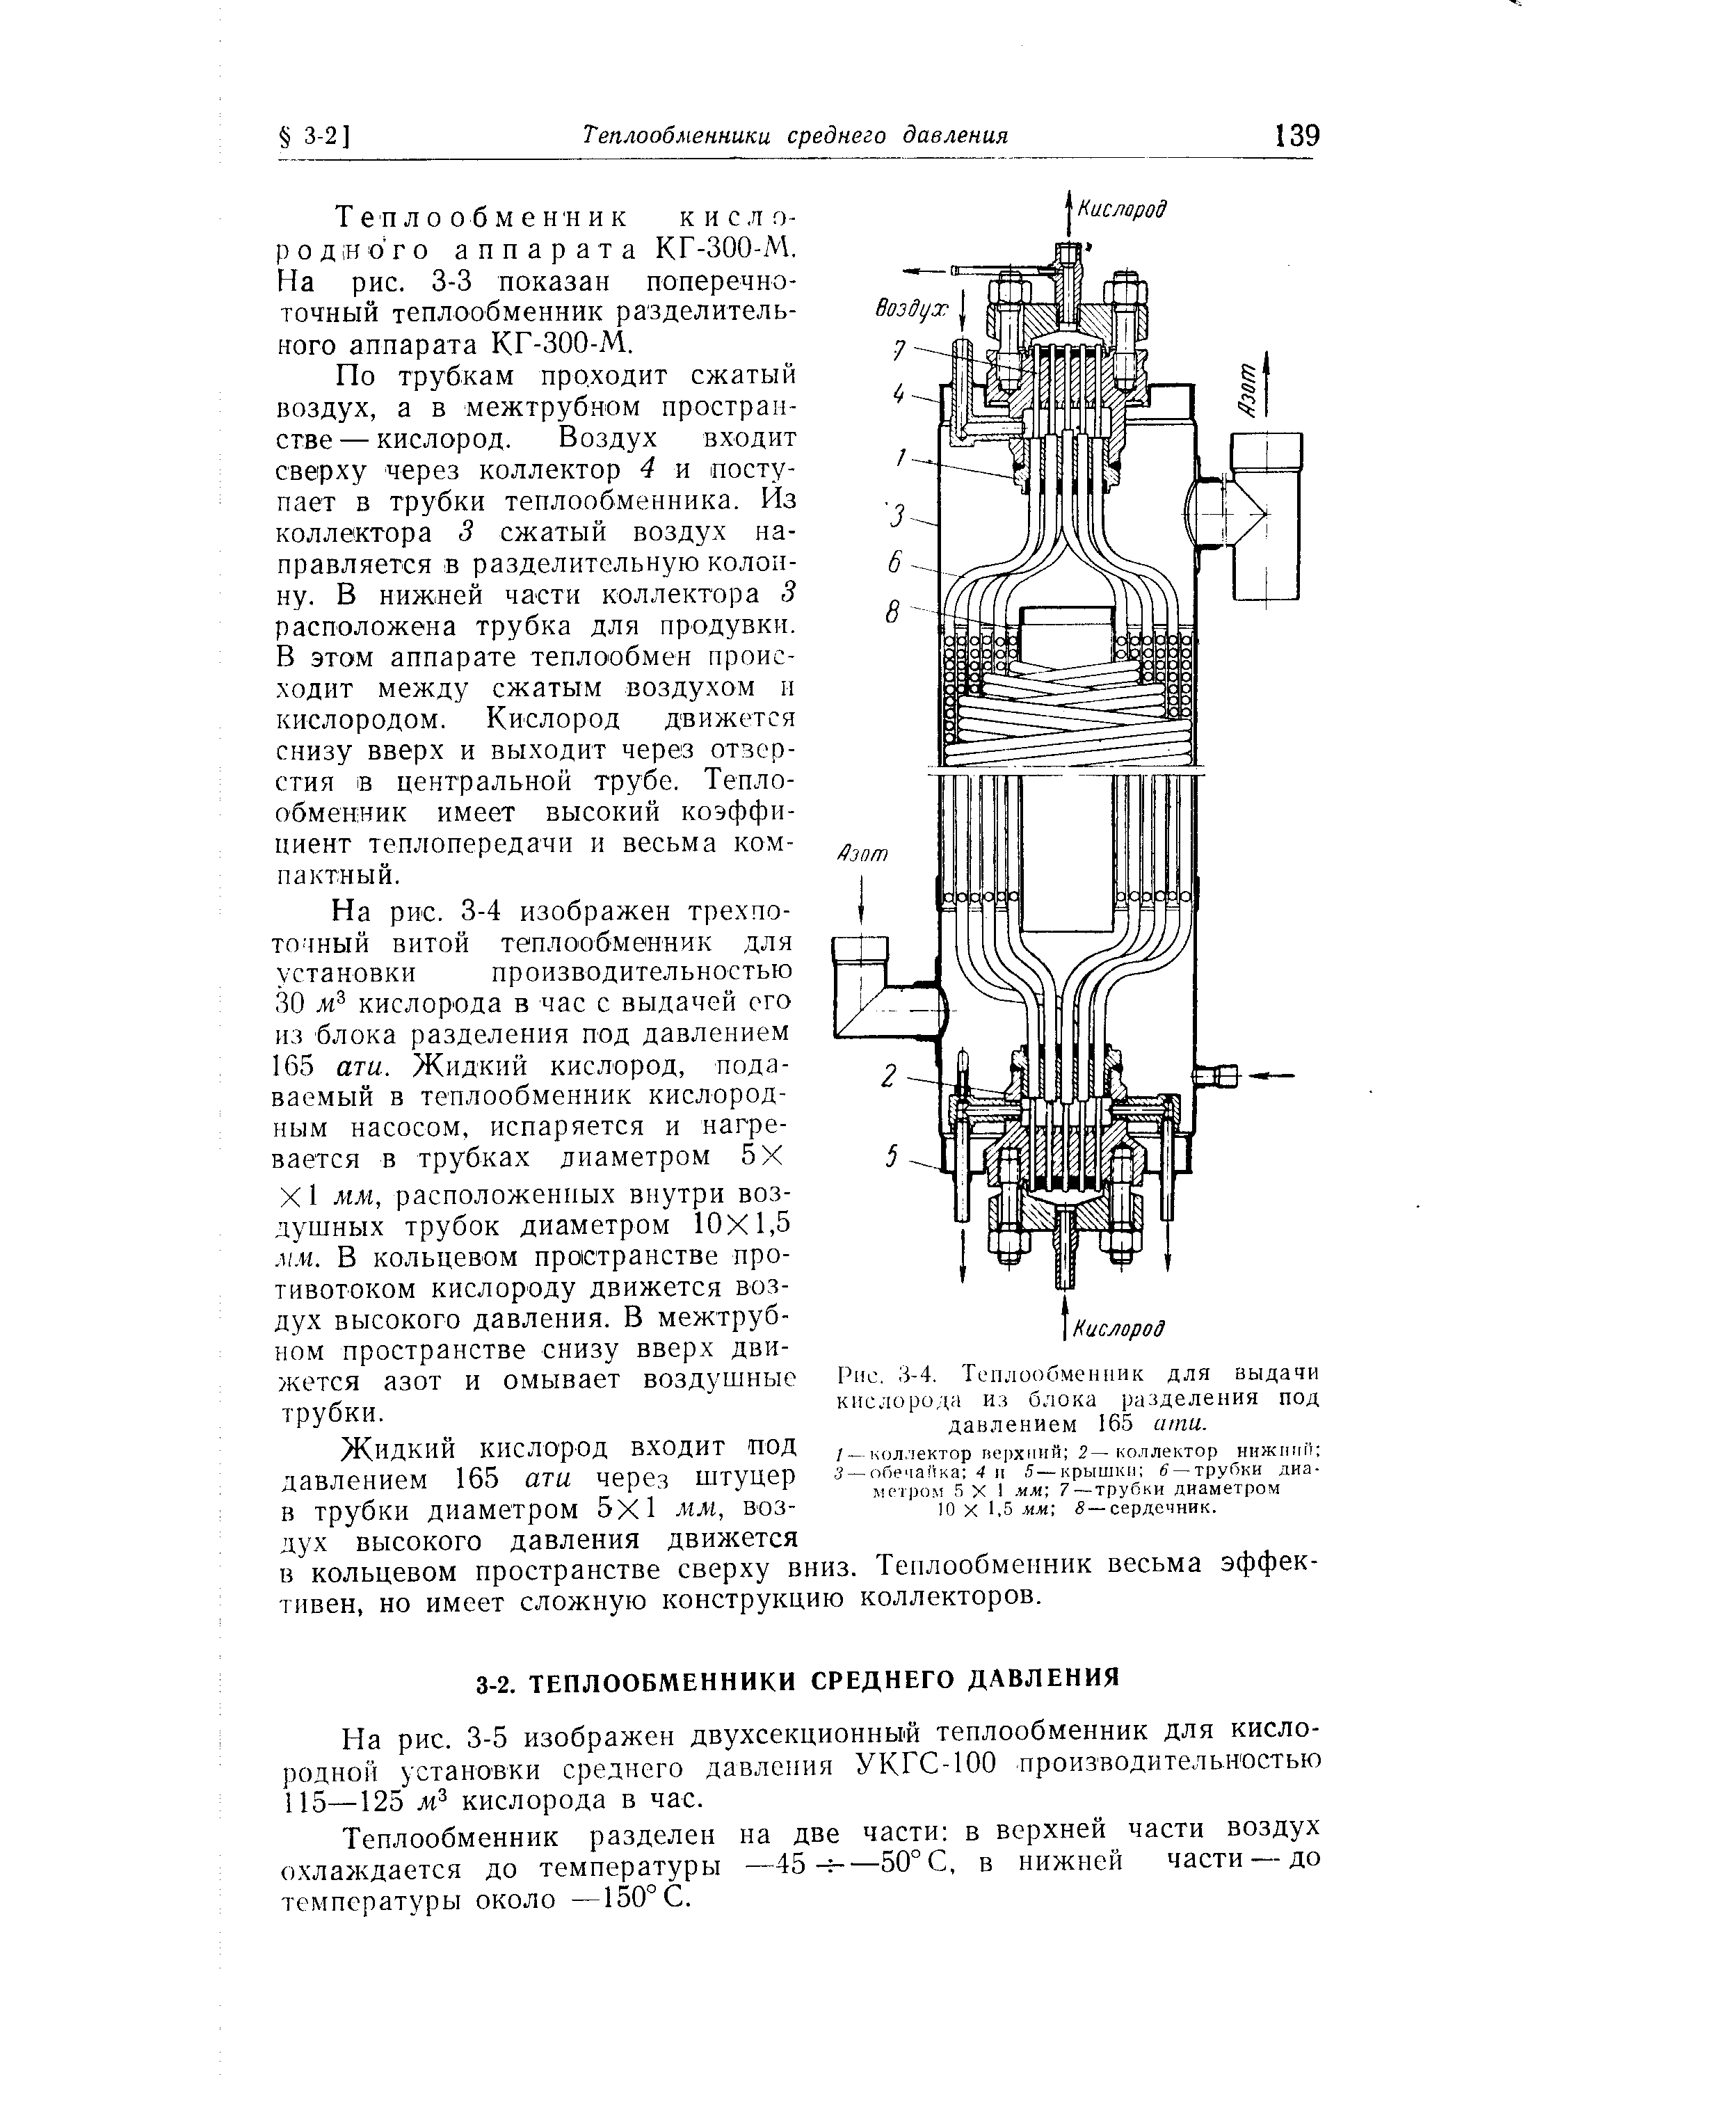 На рис. 3-3 показан поперечно-точный теплообменник разделительного аппарата КГ-ЗОО-М.